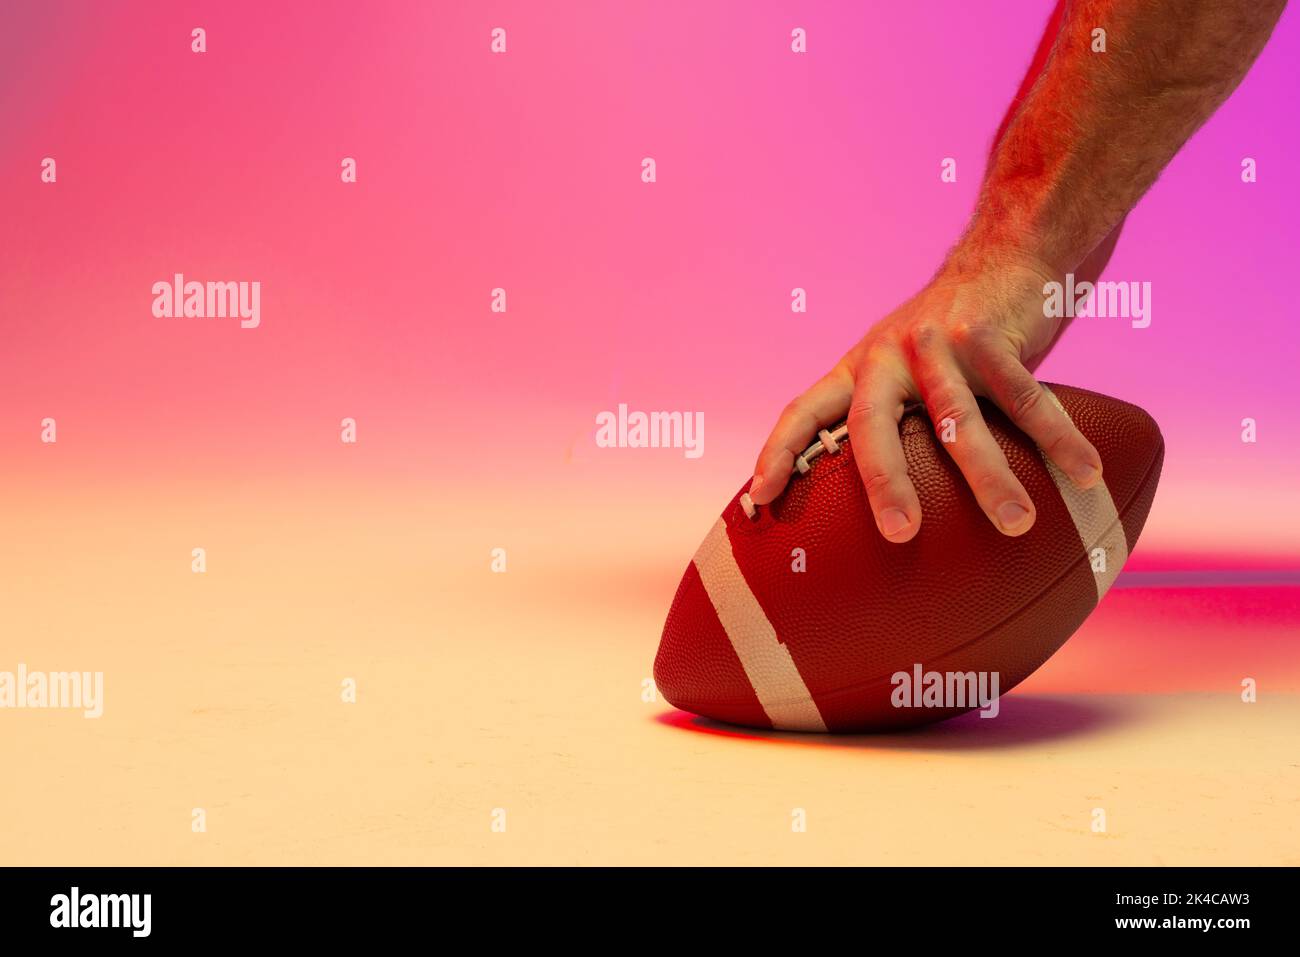 Main d'un joueur américain de football américain de race blanche tenant une balle avec un éclairage rose fluo Banque D'Images